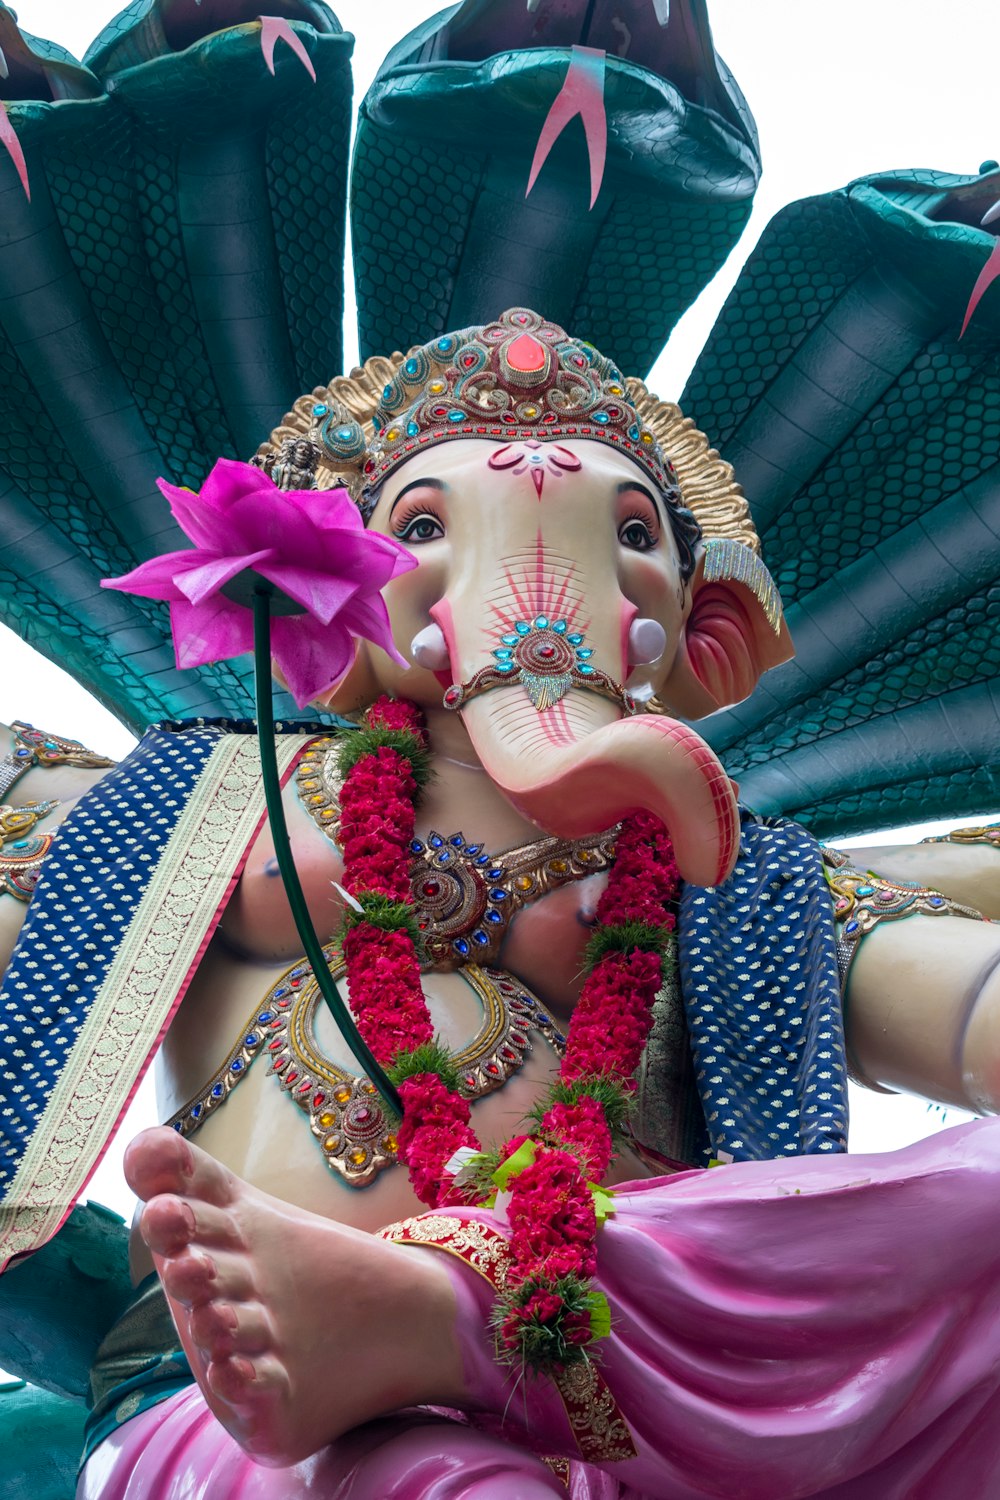 Una estatua de un elefante con una flor en su trompa